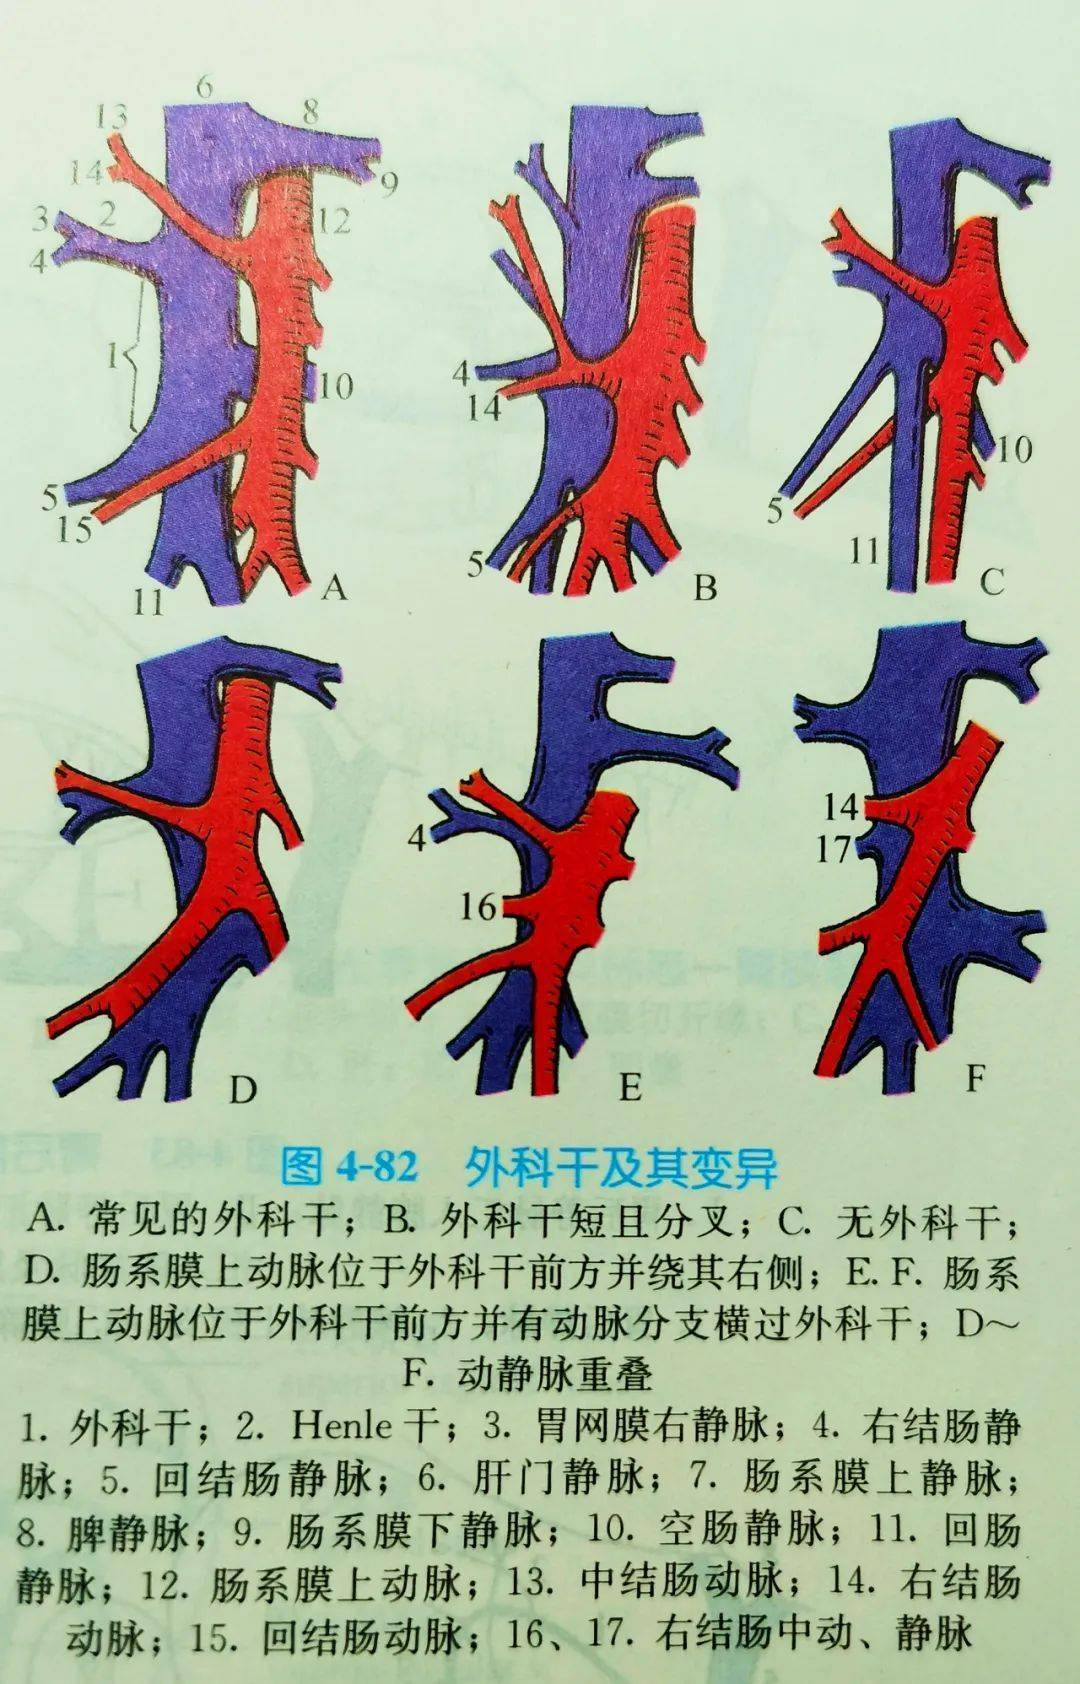 右半结肠血管解剖图图片